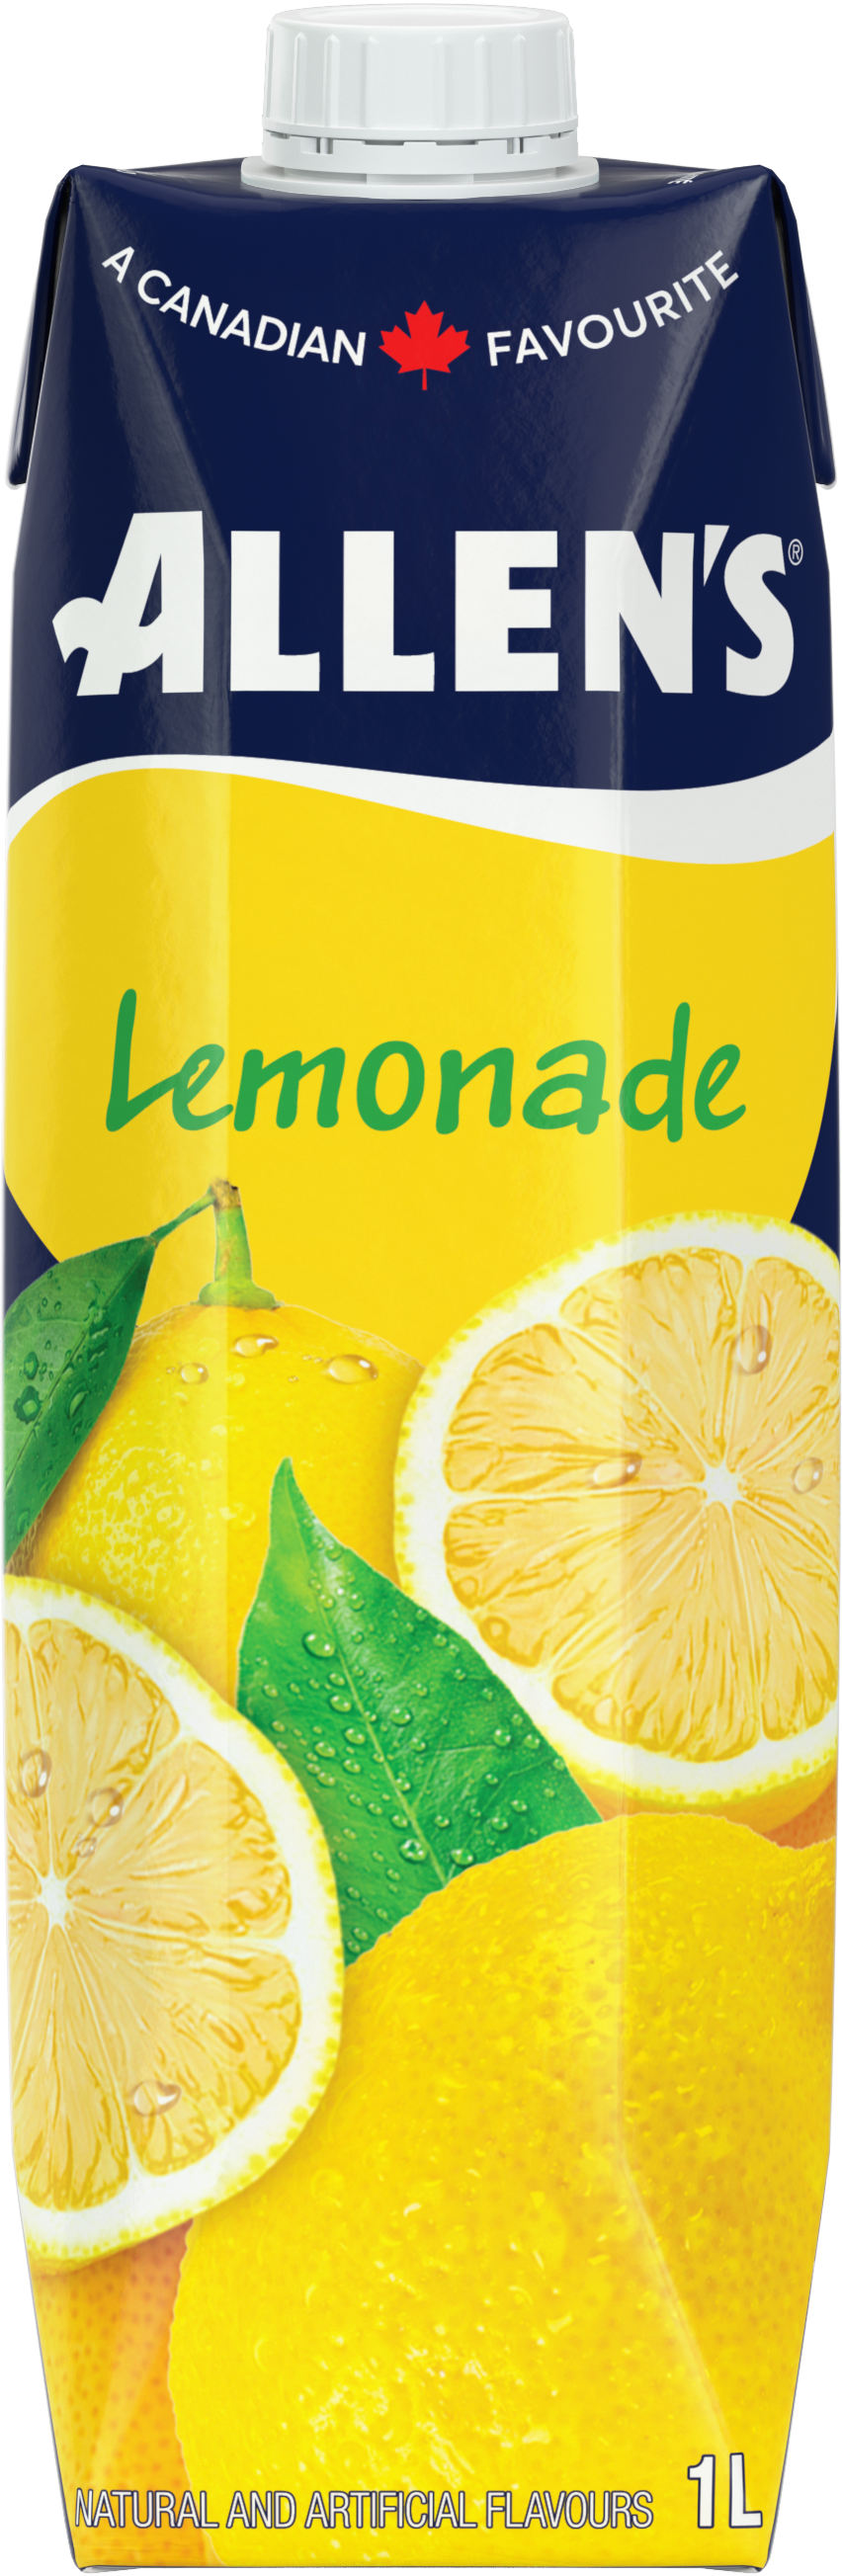 Lemonade - Allen's - Juices and Beverages - 12 x 1L Tetra Pack/Case